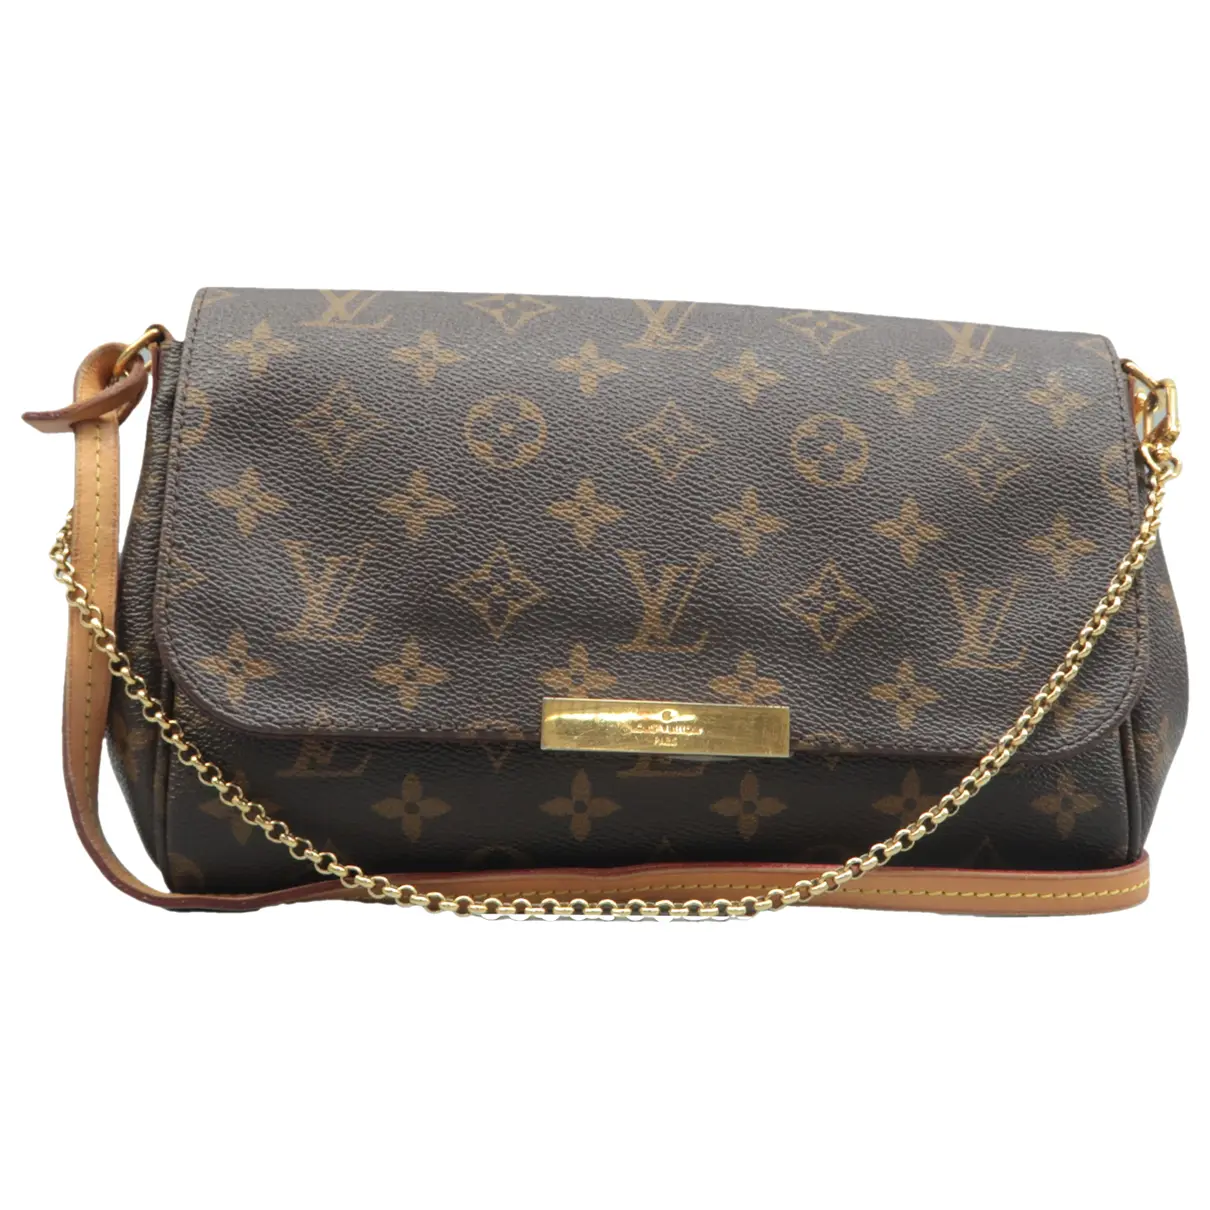 Favorite leather satchel Louis Vuitton